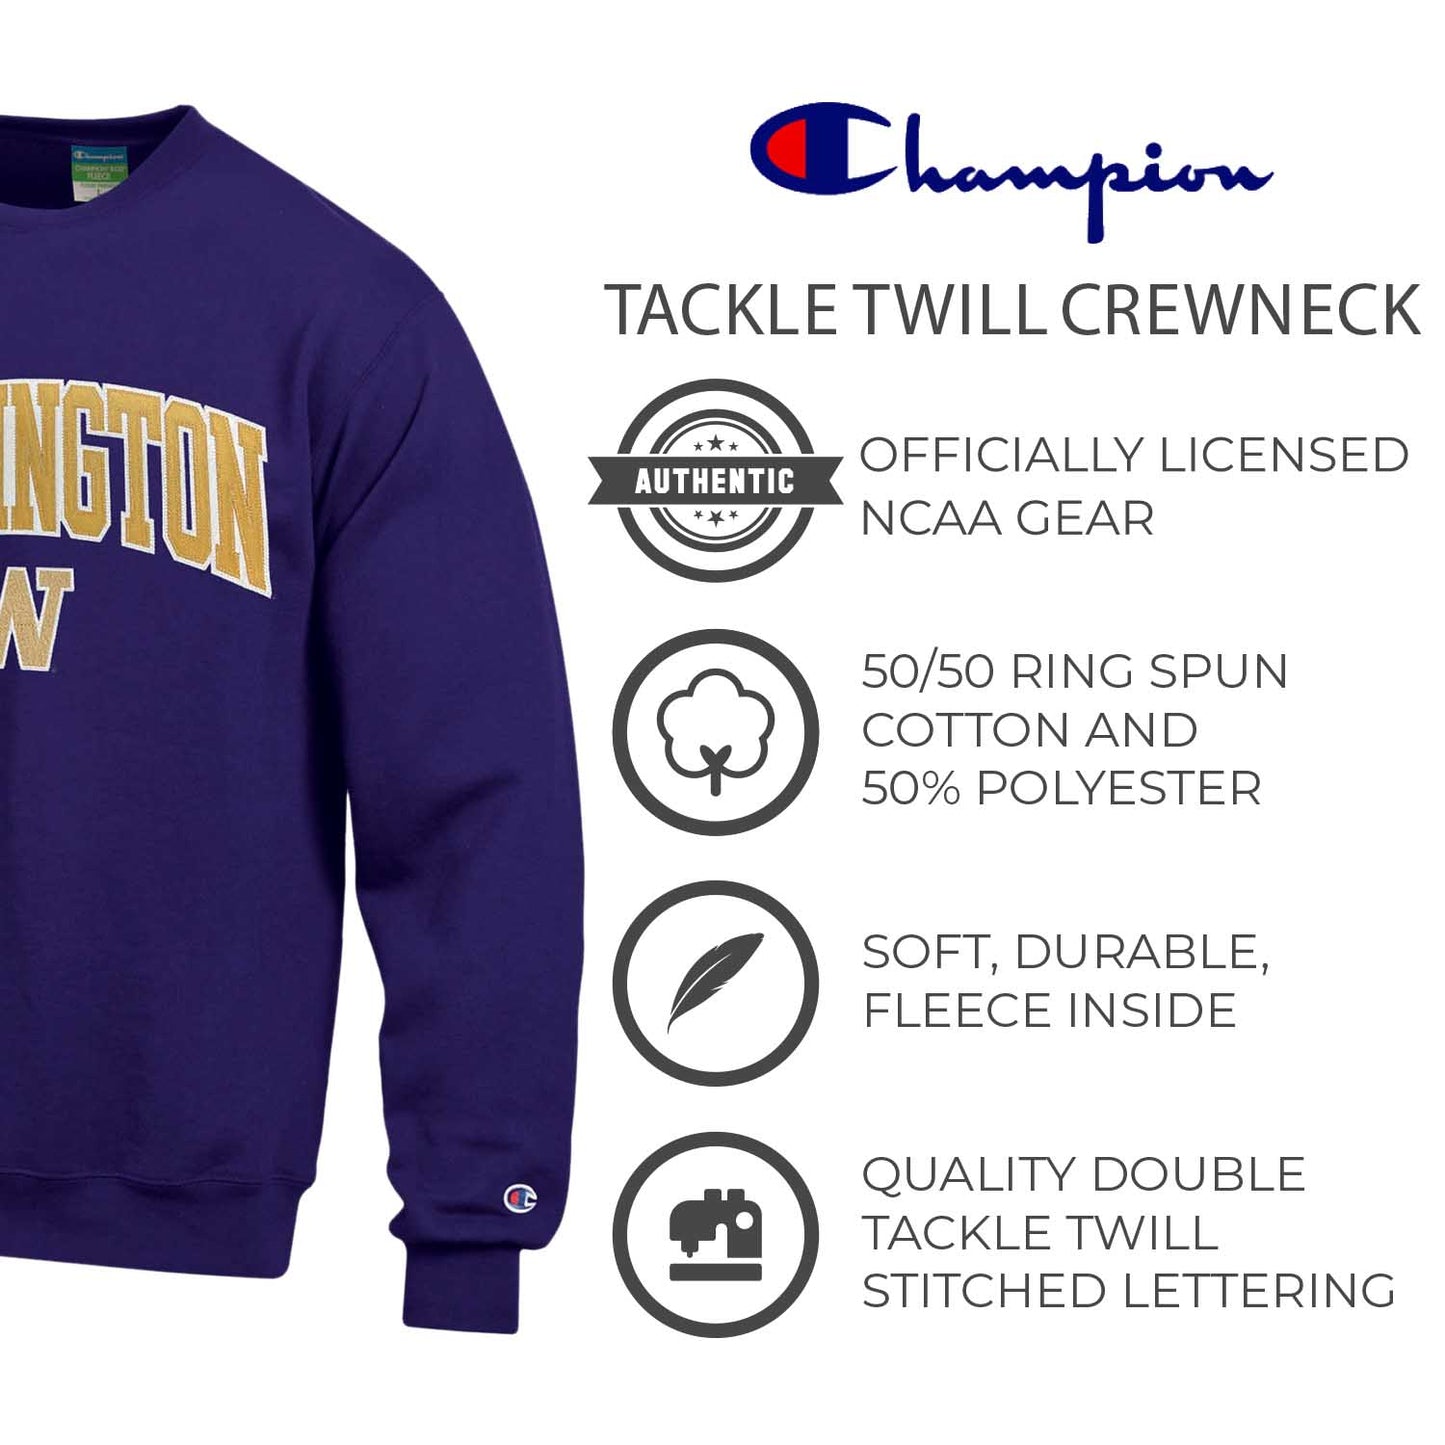 Washington Huskies Adult Tackle Twill Crewneck - Purple